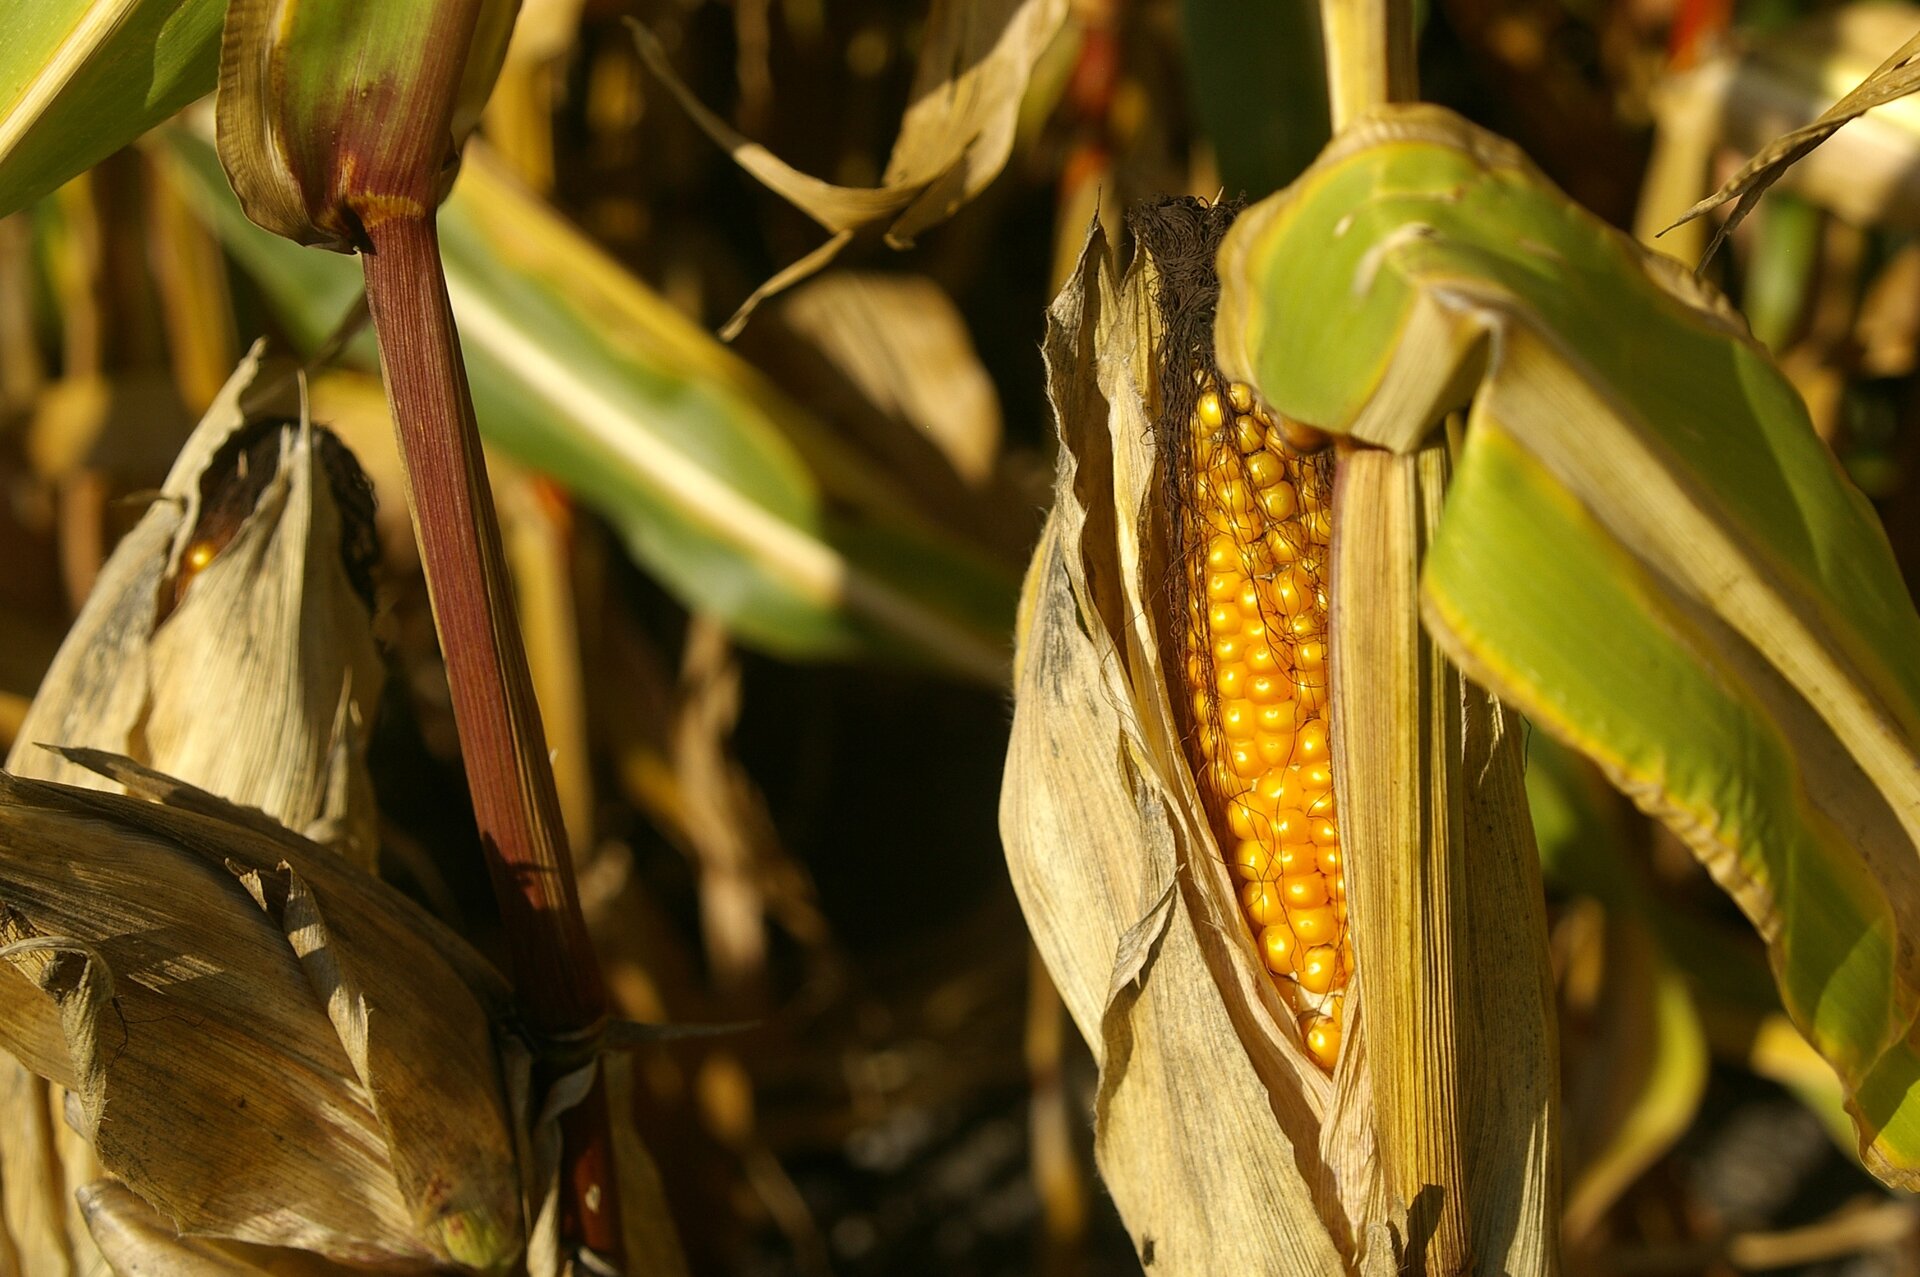 Kukurydza. Widoczna jest kolba kukurydzy z dojrzałymi, żółtymi nasionami. Są jasnożółte, gęsto ułożone, błyszczące.